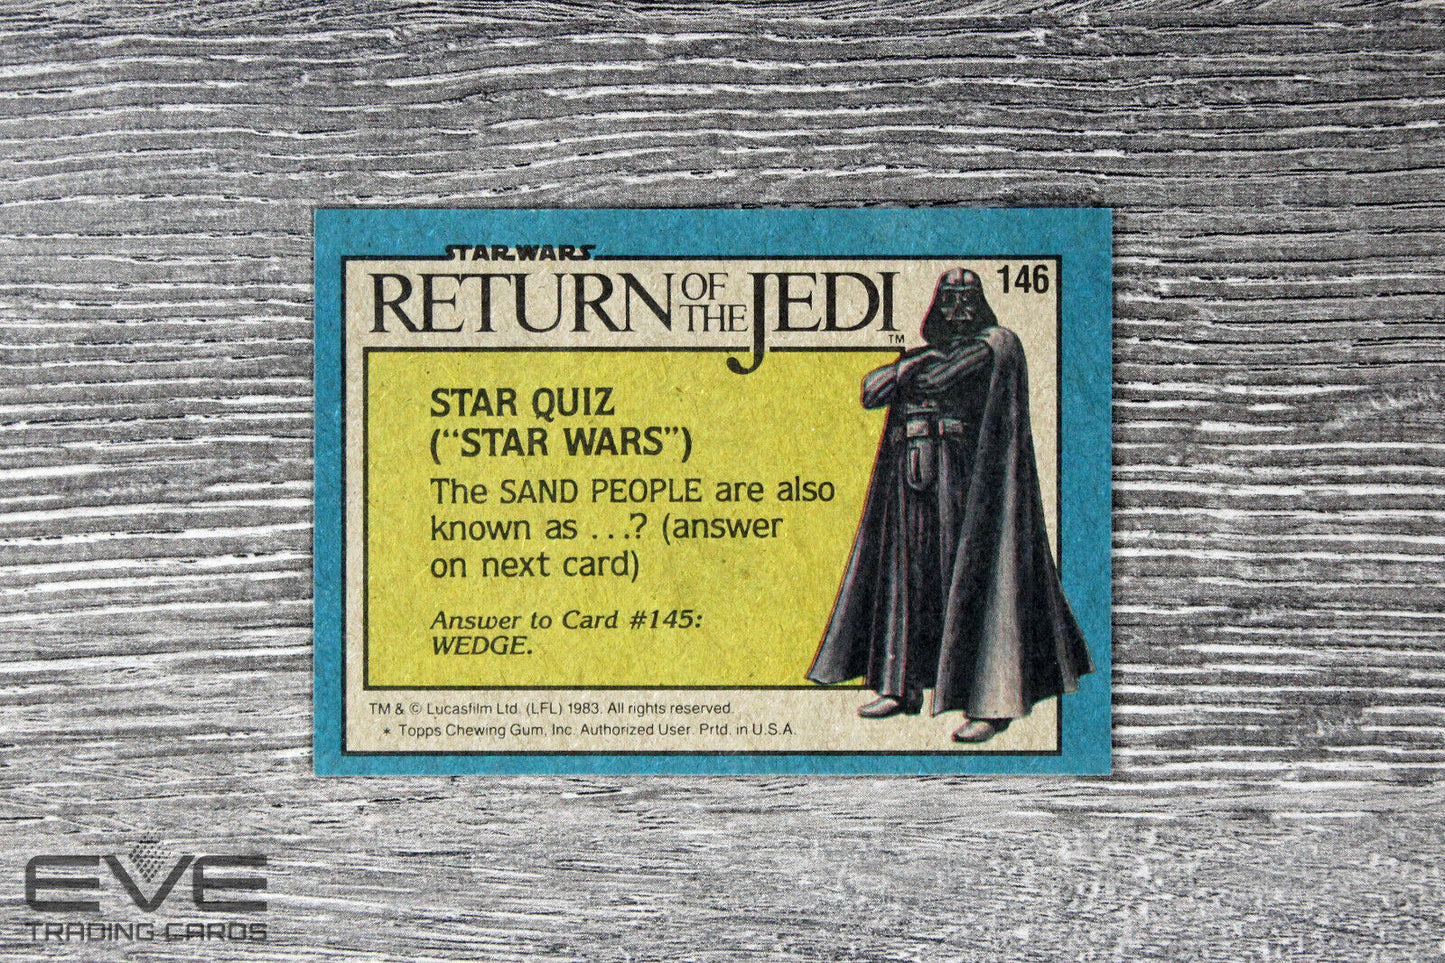 1983 Topps Vintage Star Wars Return of the Jedi S2 Card #146 R2-D2 on Endor